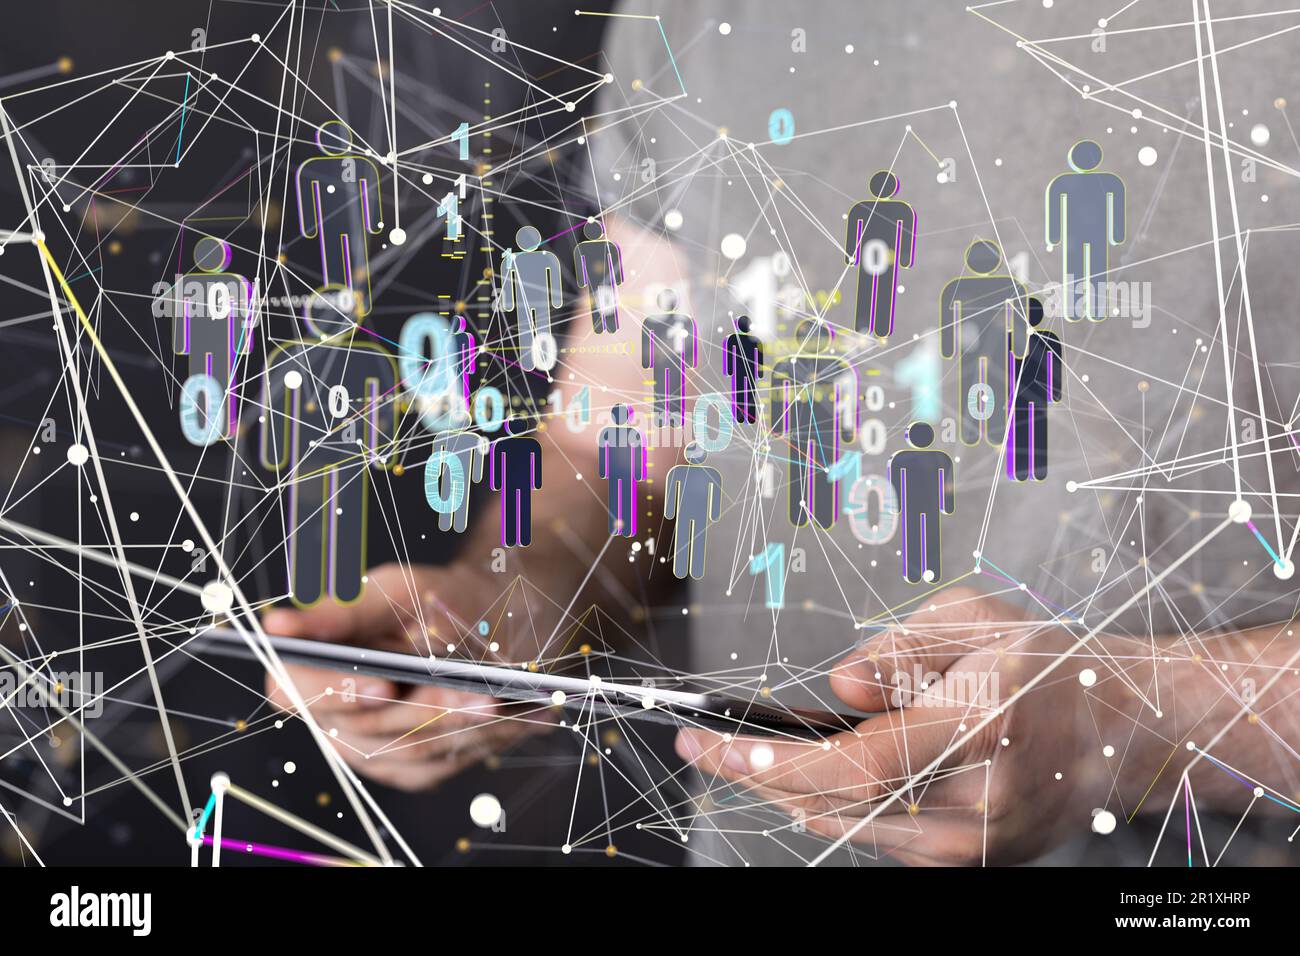 Un homme tenant une tablette moderne avec un groupe de personnes numériques flottant au-dessus, concept de communication numérique Banque D'Images